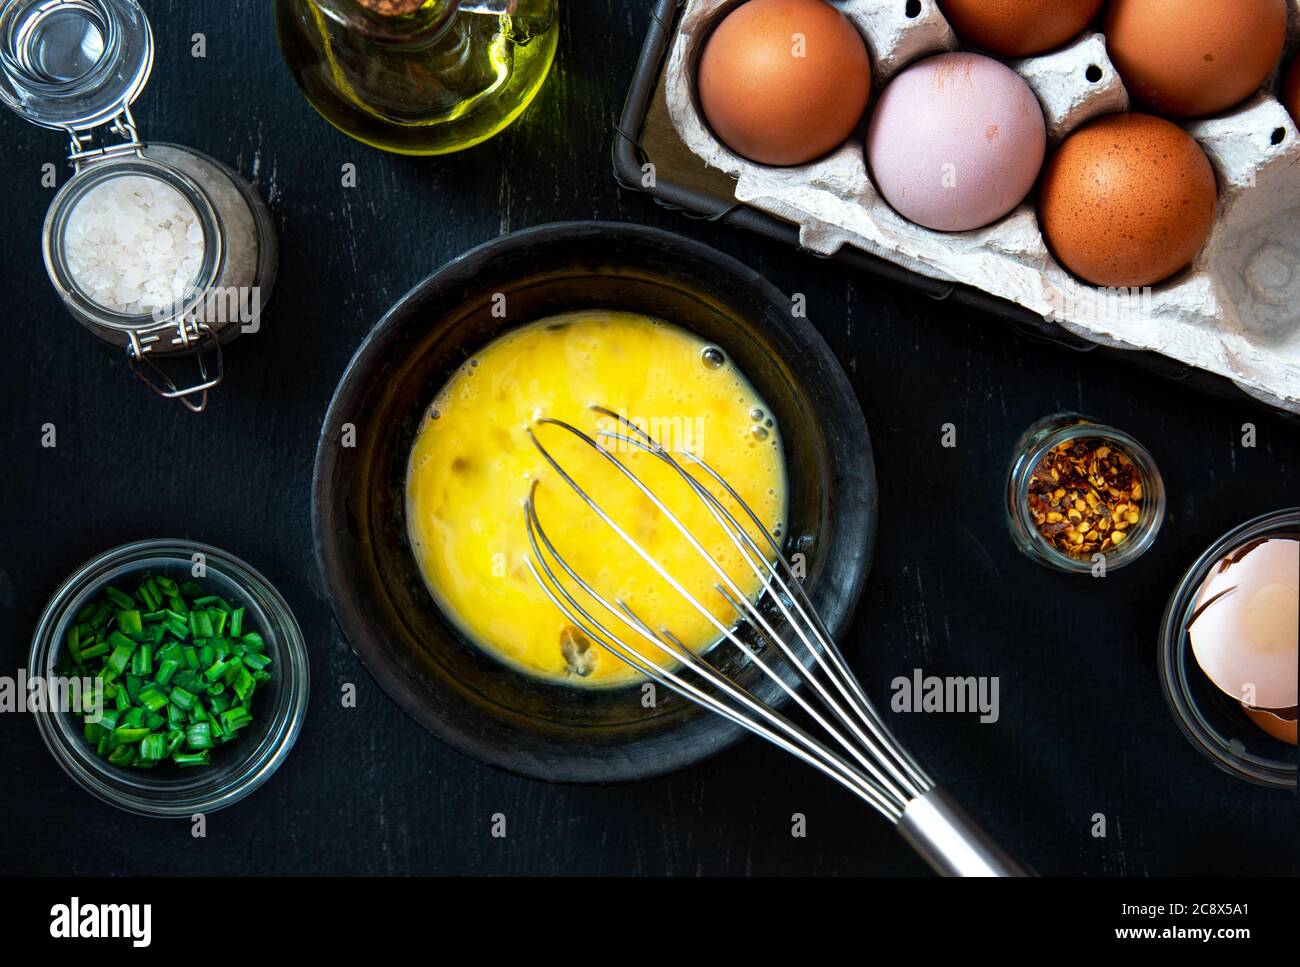 Schneebesen Und Eier in Schüssel Butter Auf Holztisch Flach Legen Stockfoto  - Bild von tabelle, nahrung: 252081610